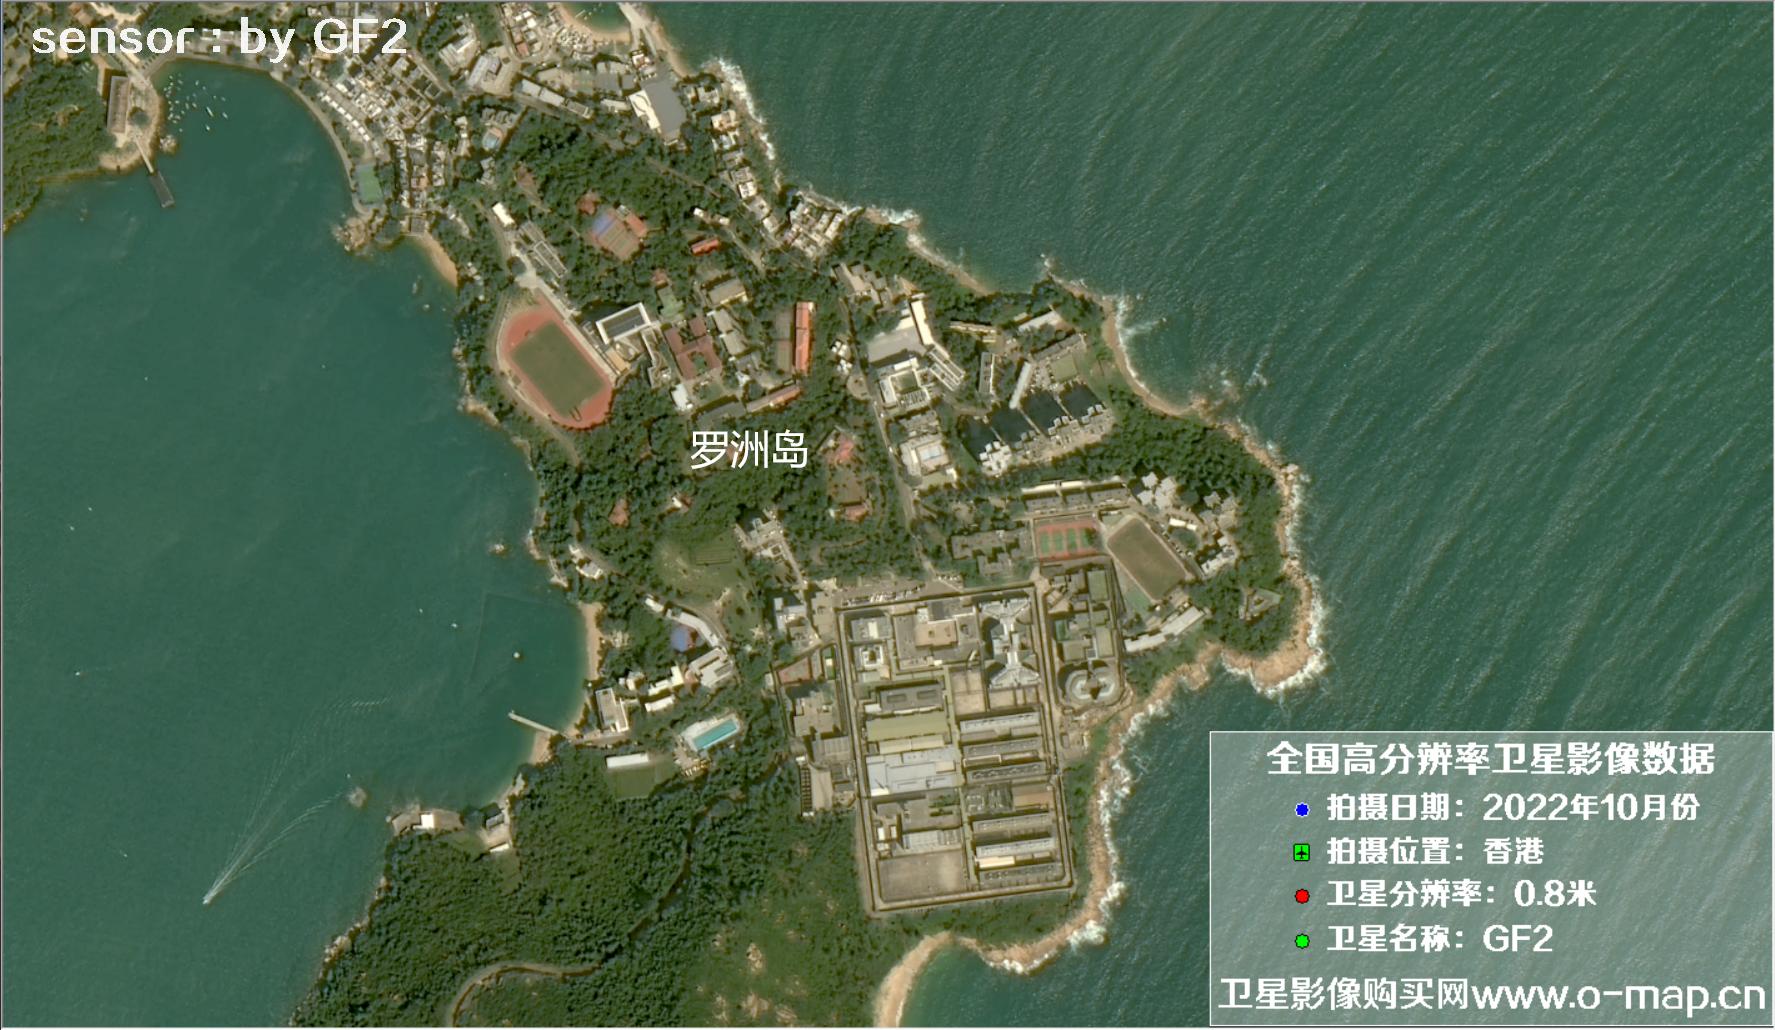 GF2卫星2022年10月份拍摄的香港南区南侧沿岸卫星图